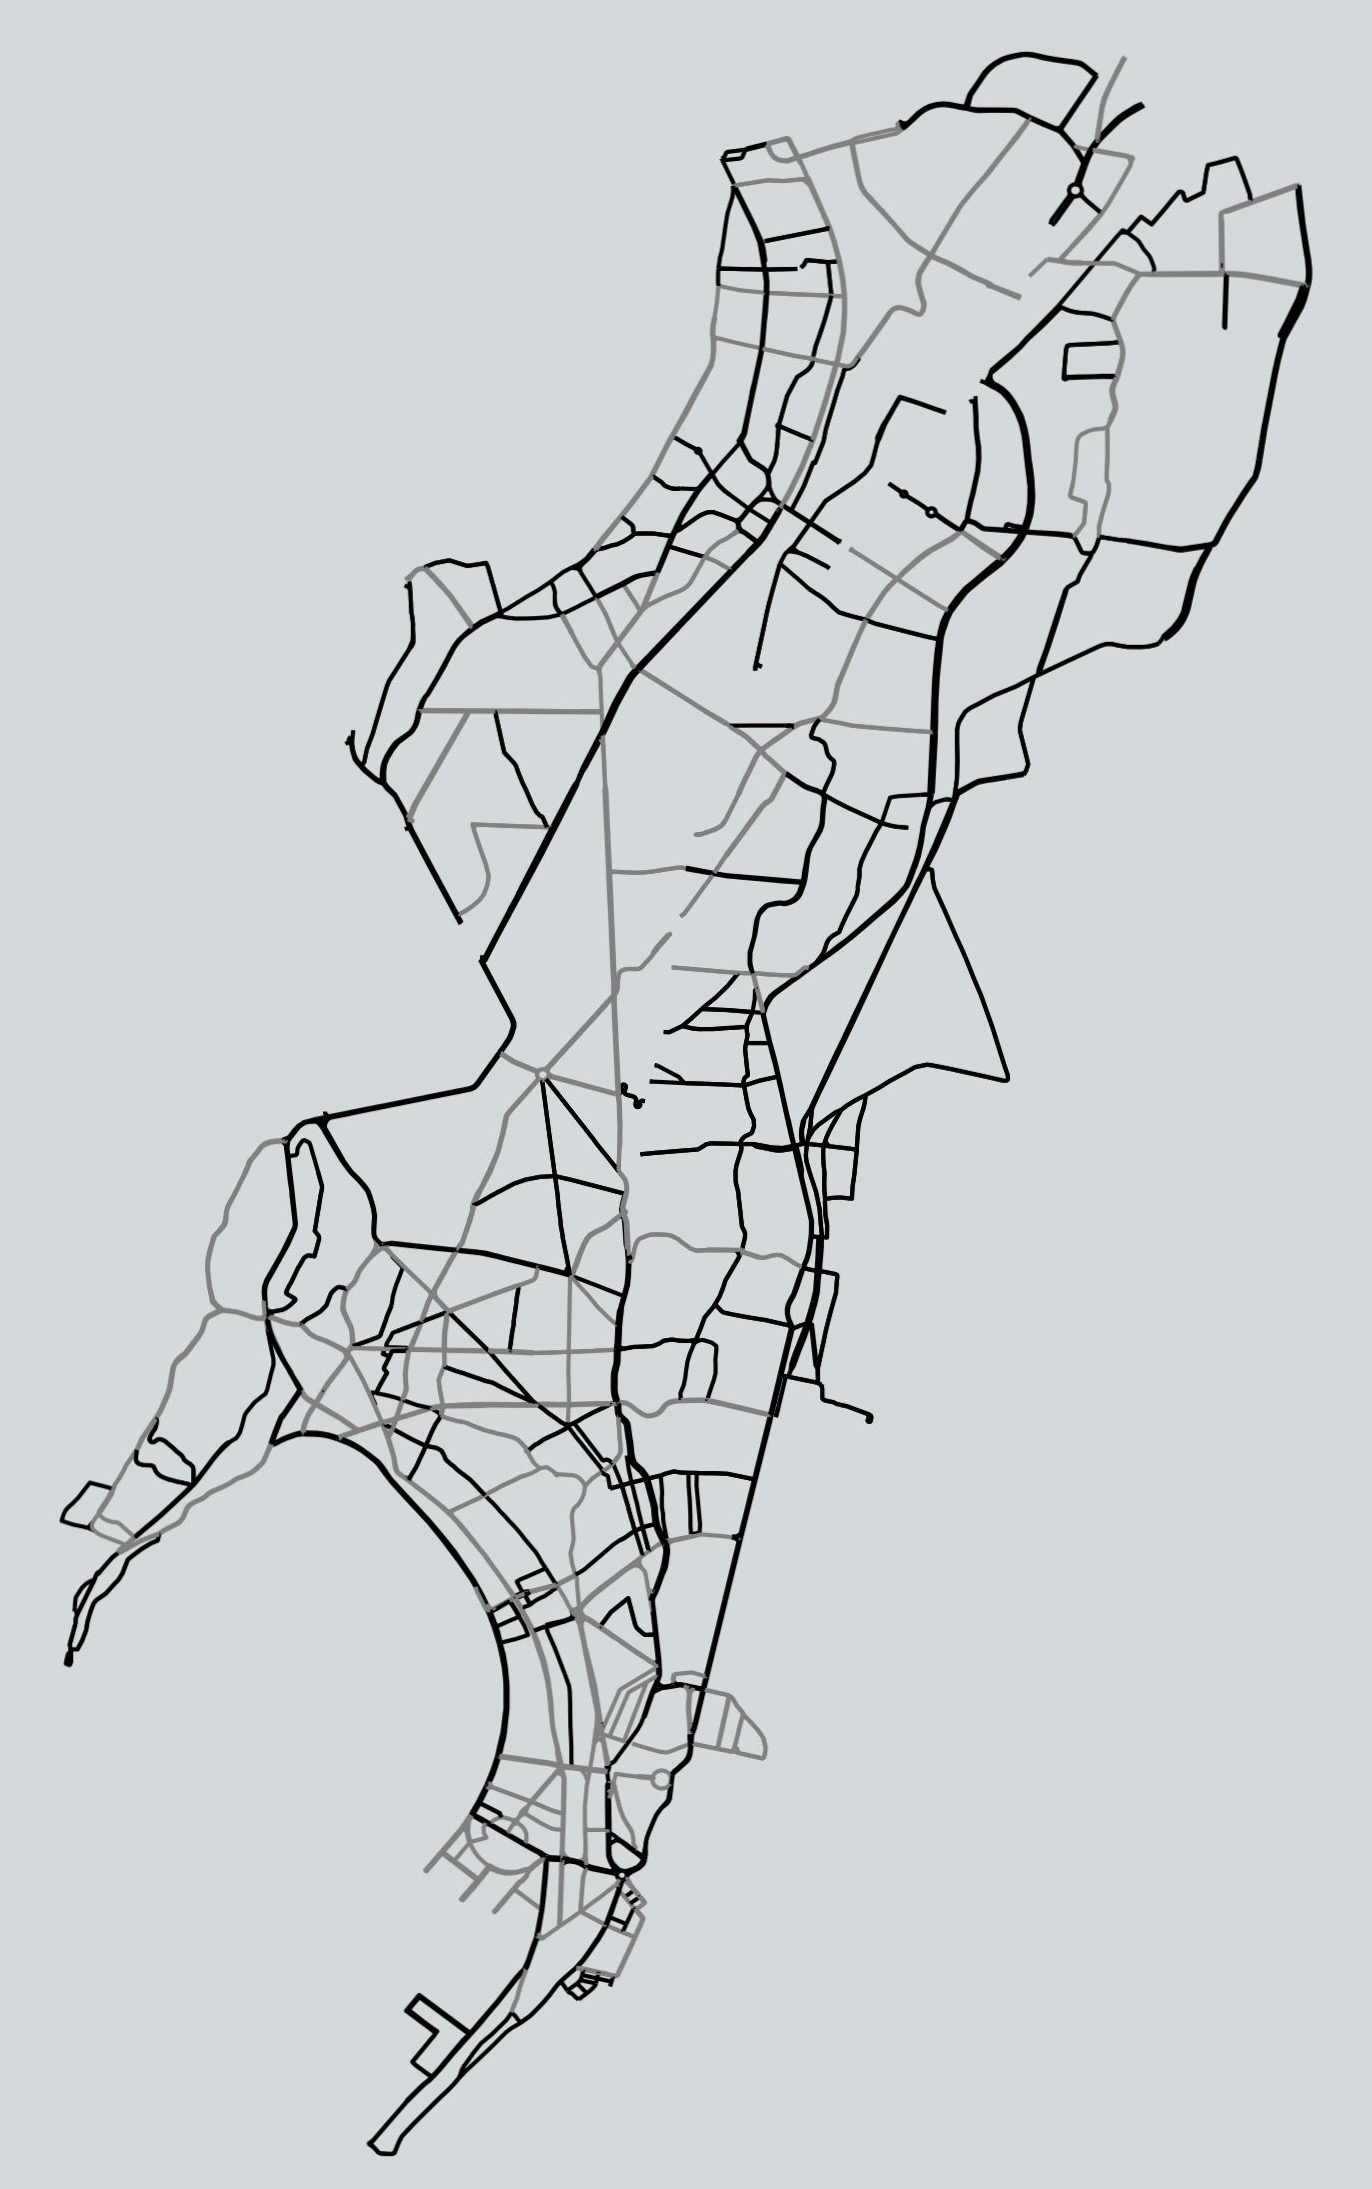 Map of Mumbai